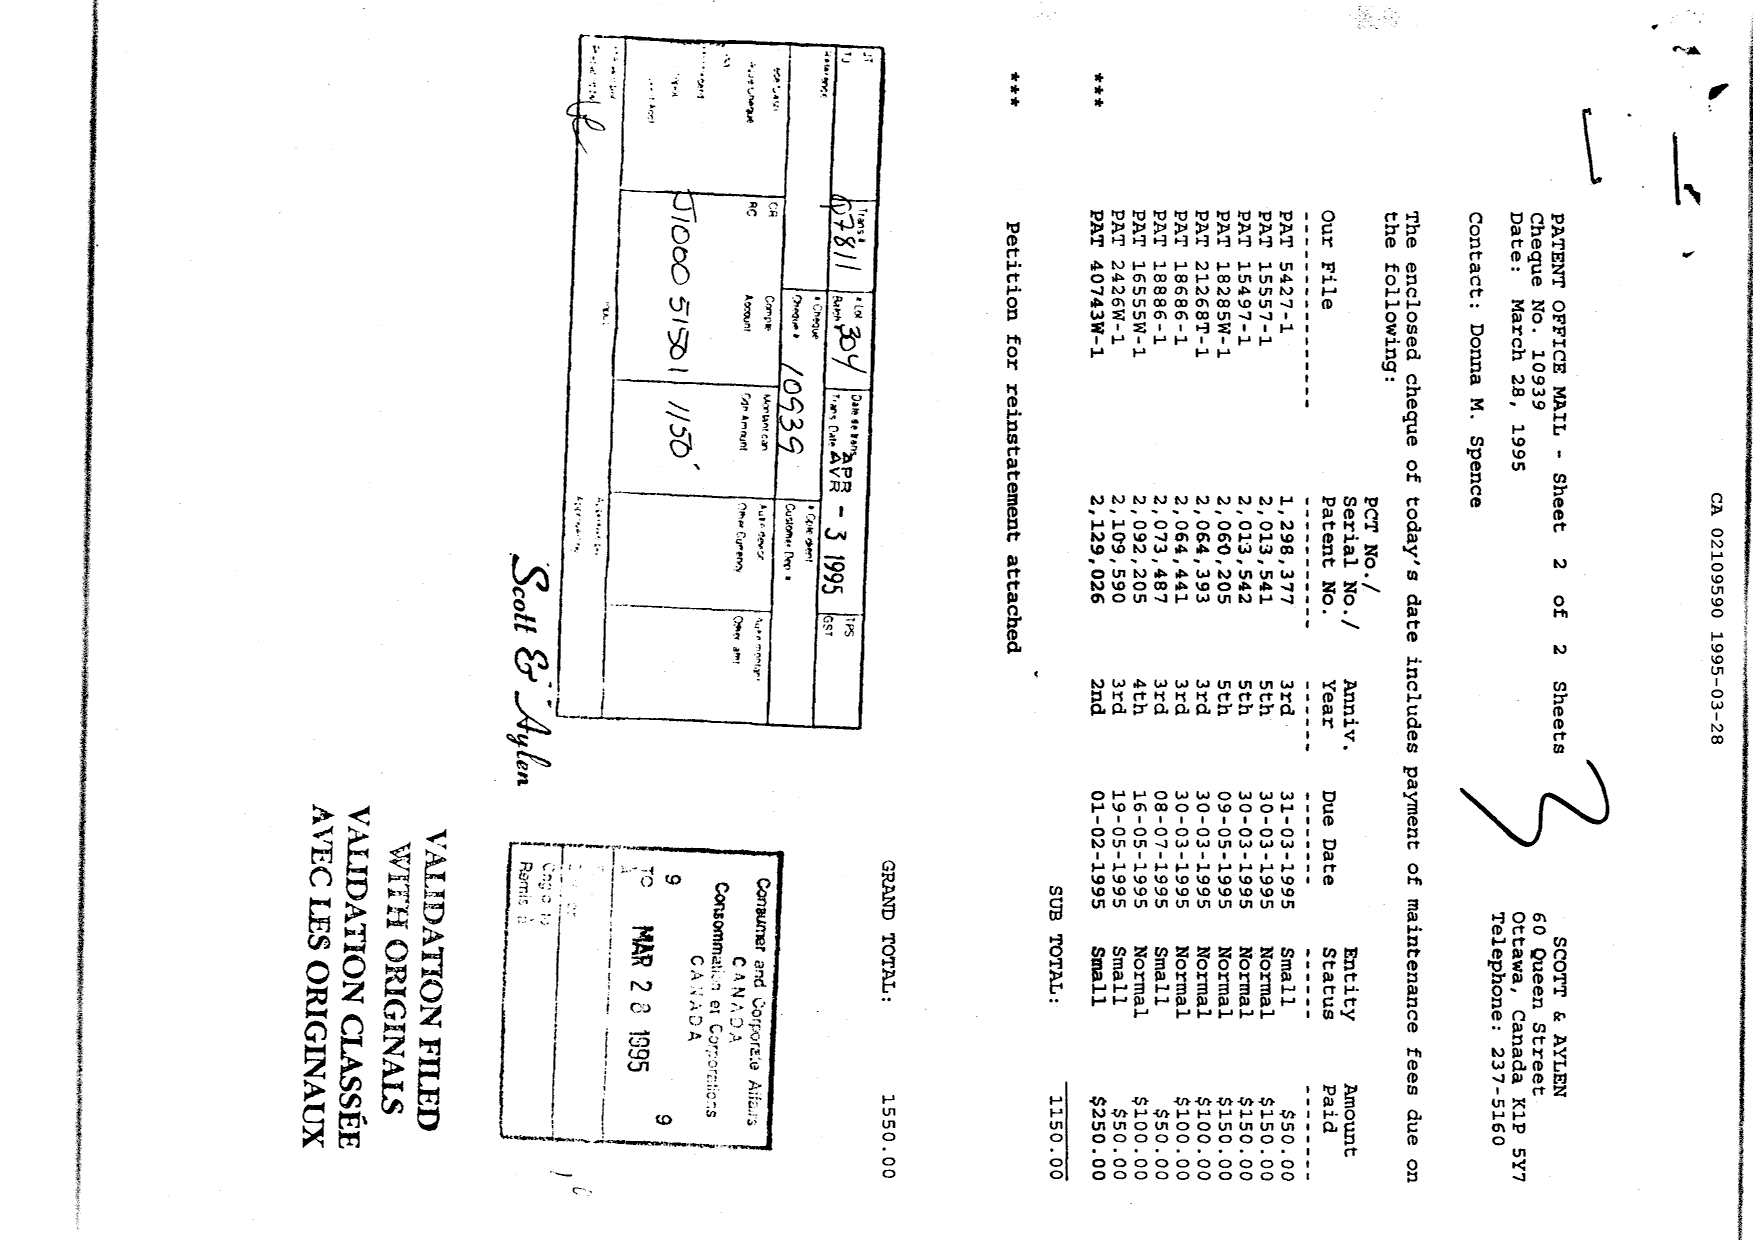 Document de brevet canadien 2109590. Taxes 19941228. Image 1 de 1